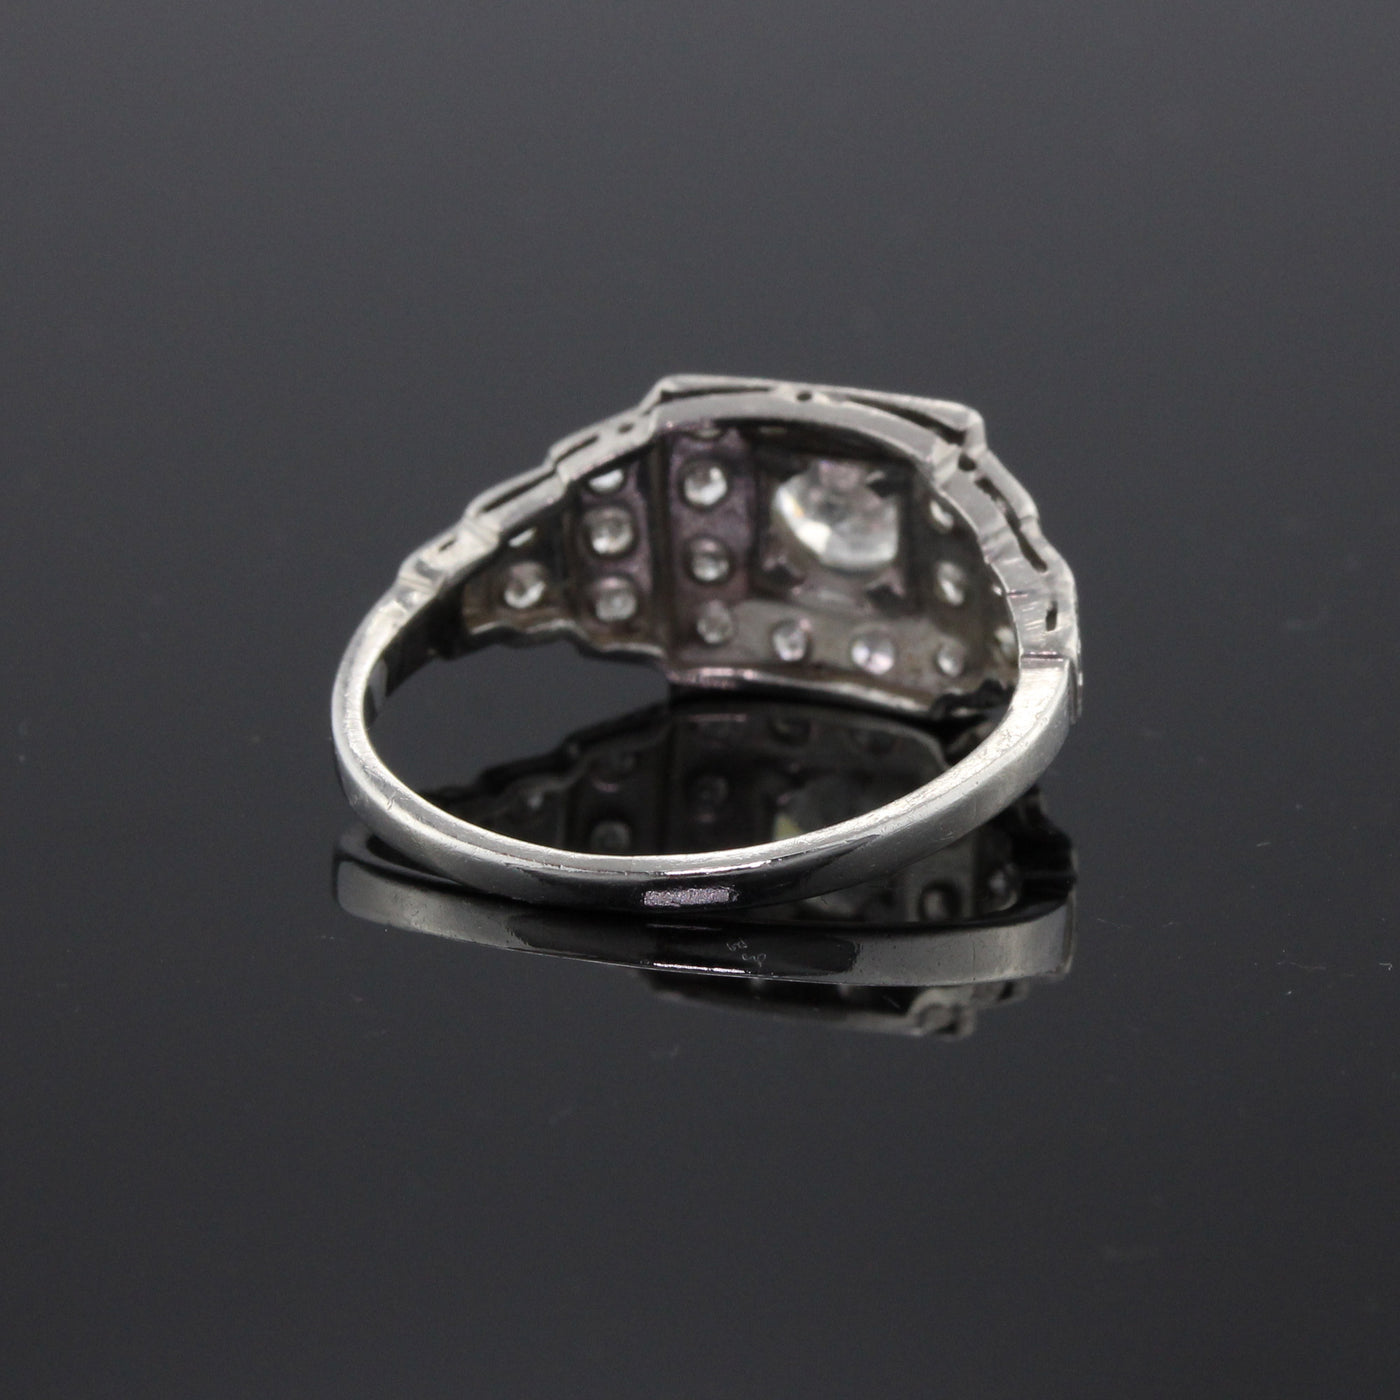 Antique Art Deco Platinum & Diamond Engagement Ring - The Antique Parlour